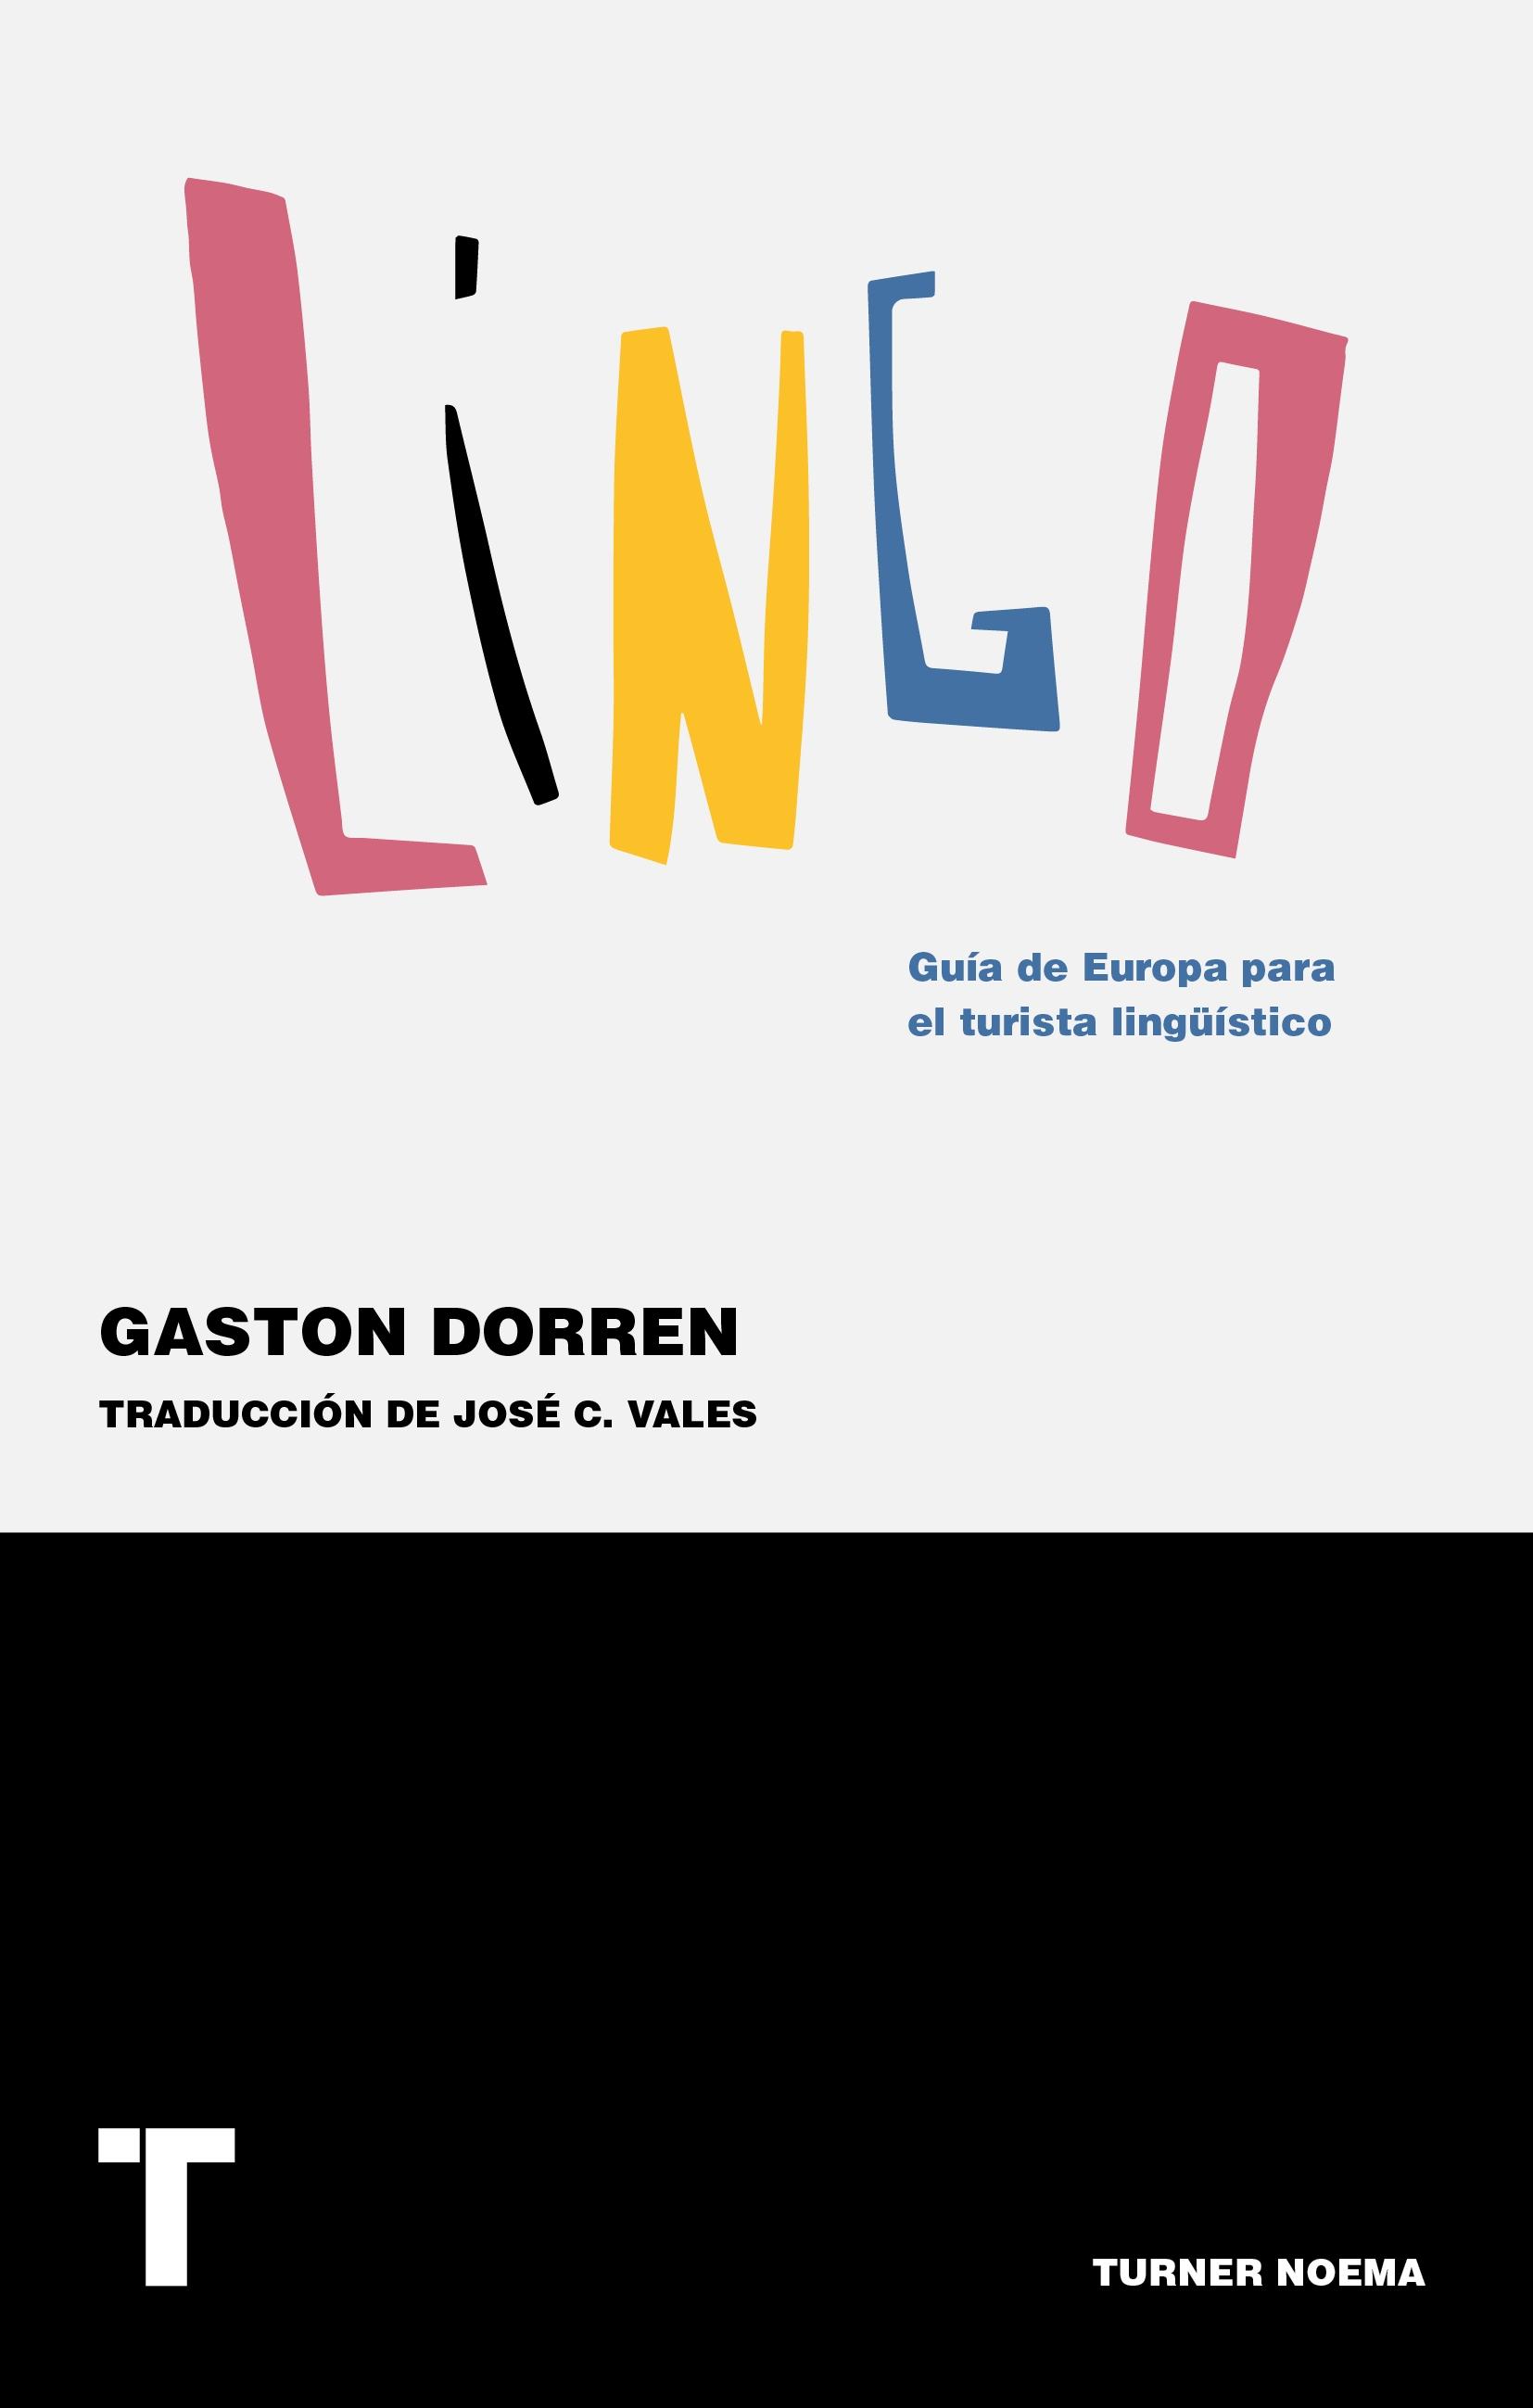 Lingo "Guía de Europa para el Turista Lingüístico"